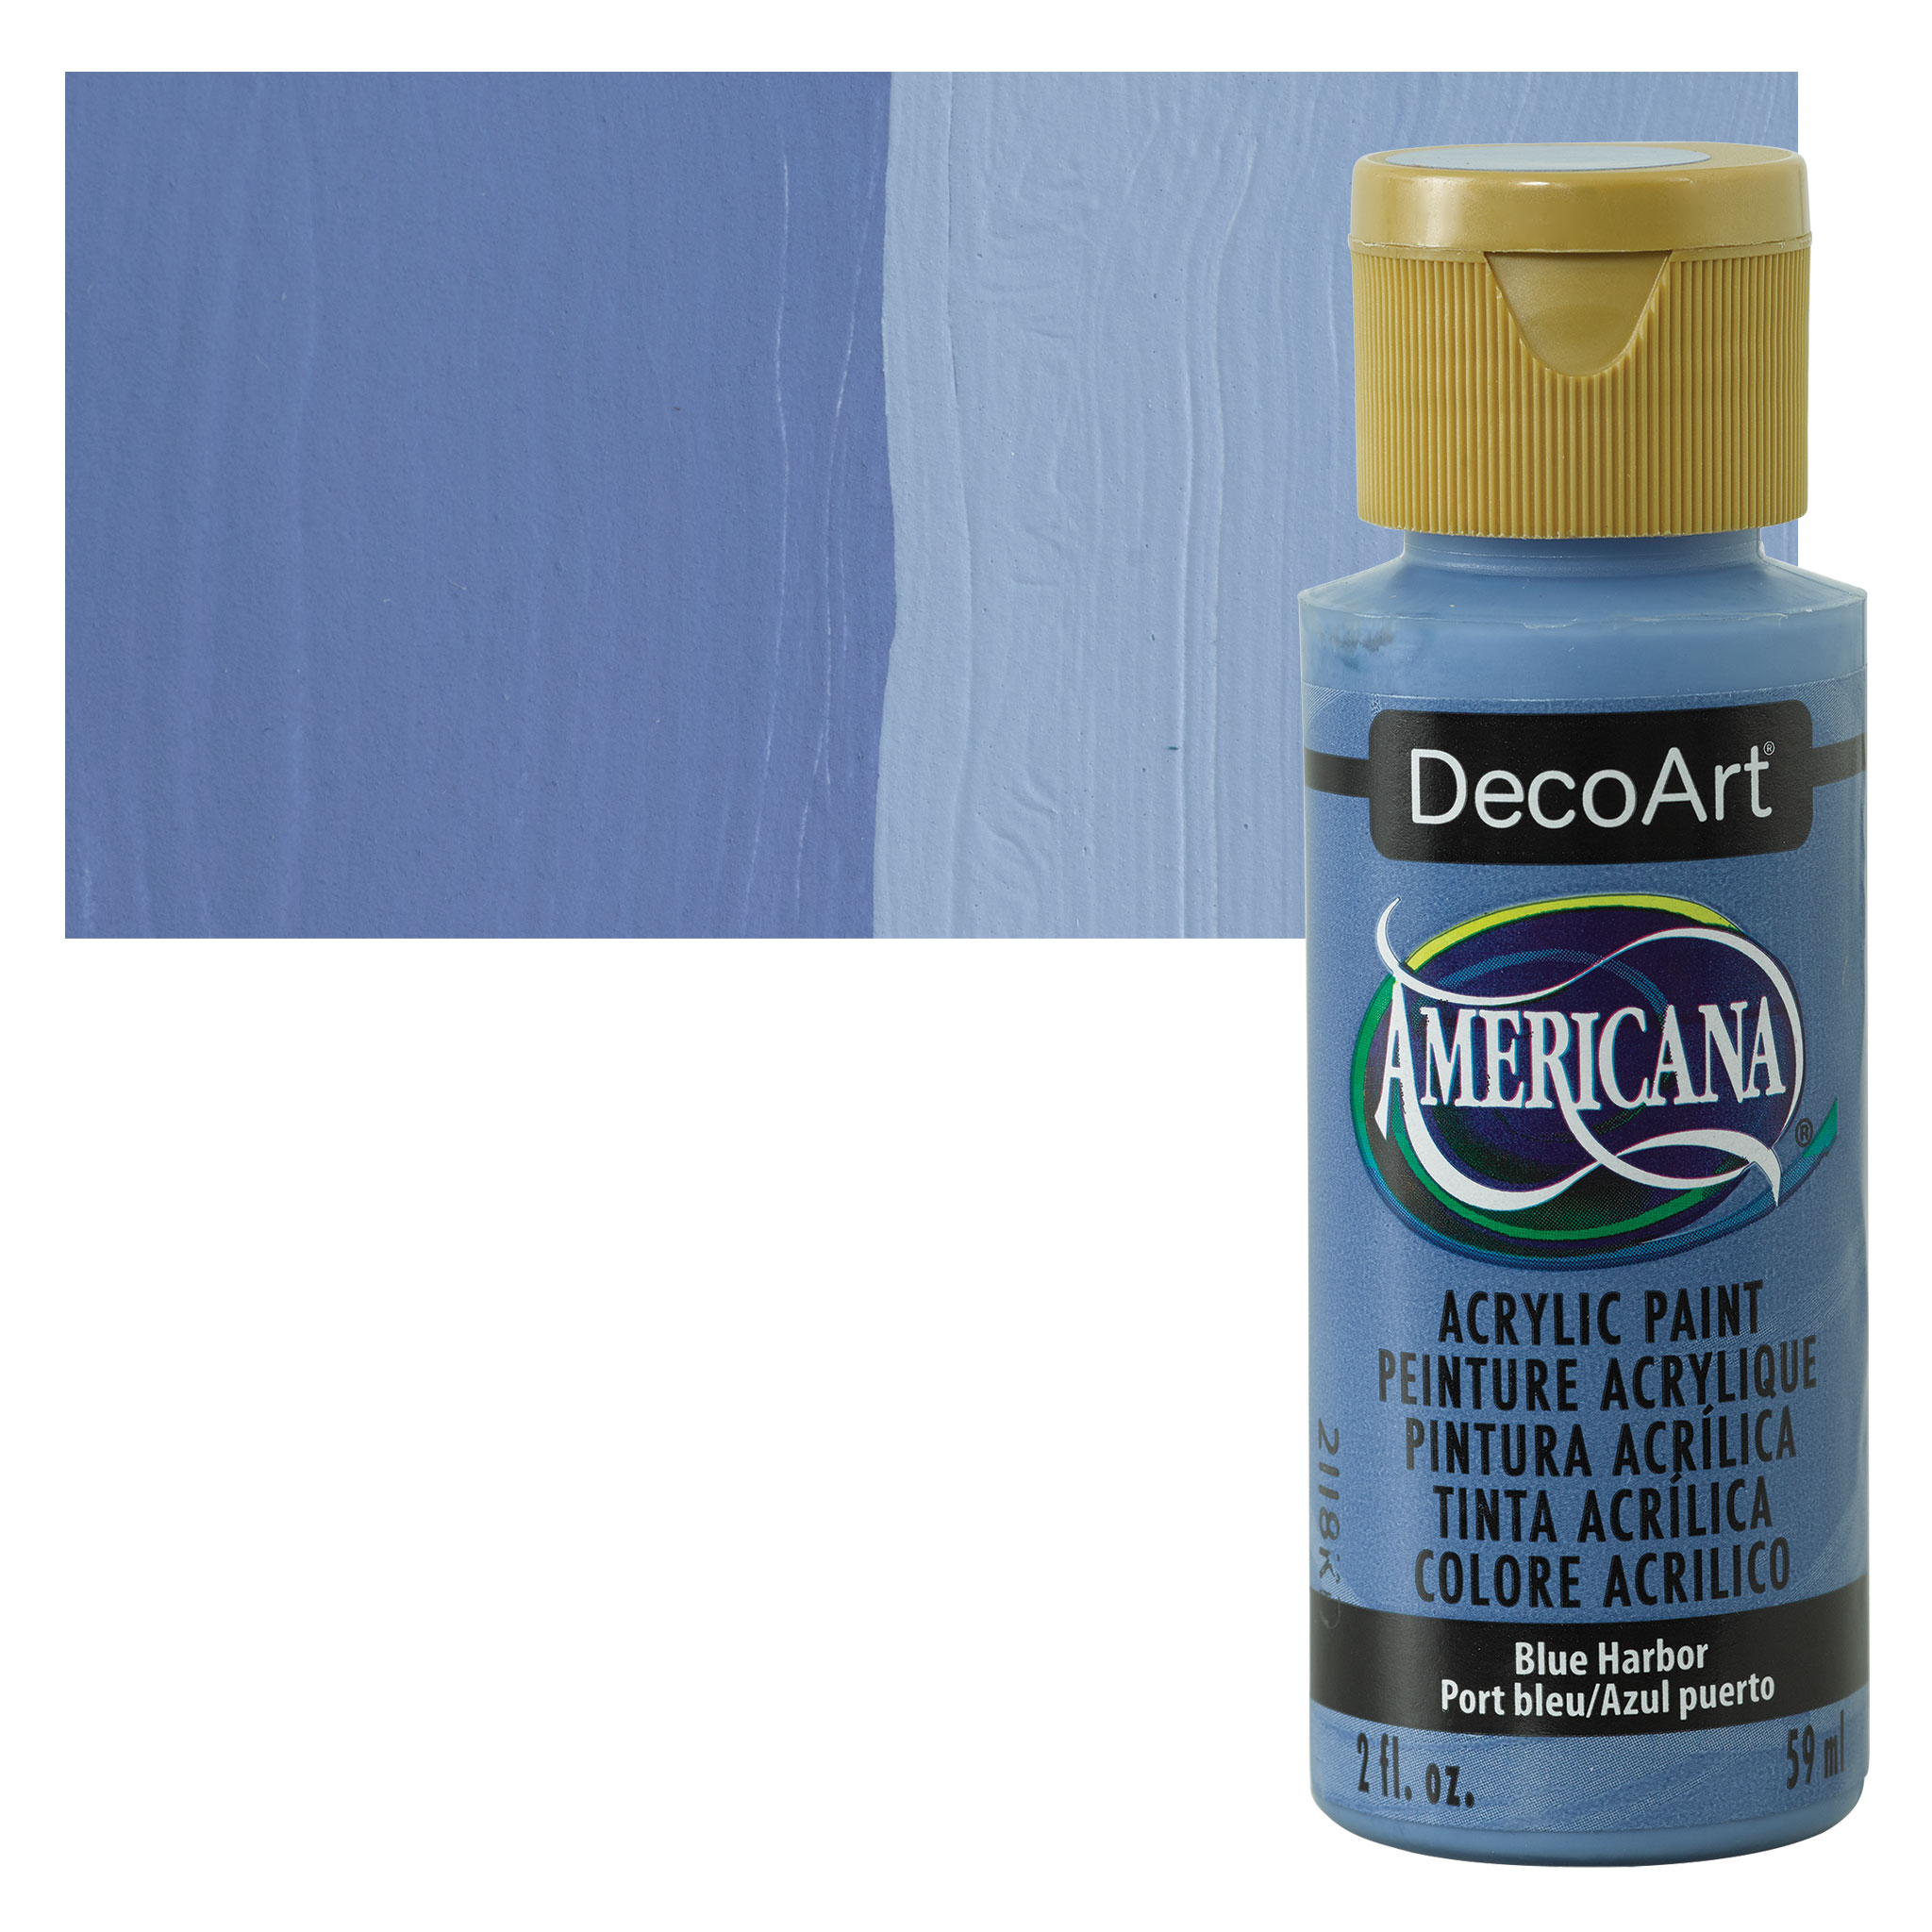  DecoArt Americana Acrylic Paint, 2-Ounce, Driftwood : Health &  Household